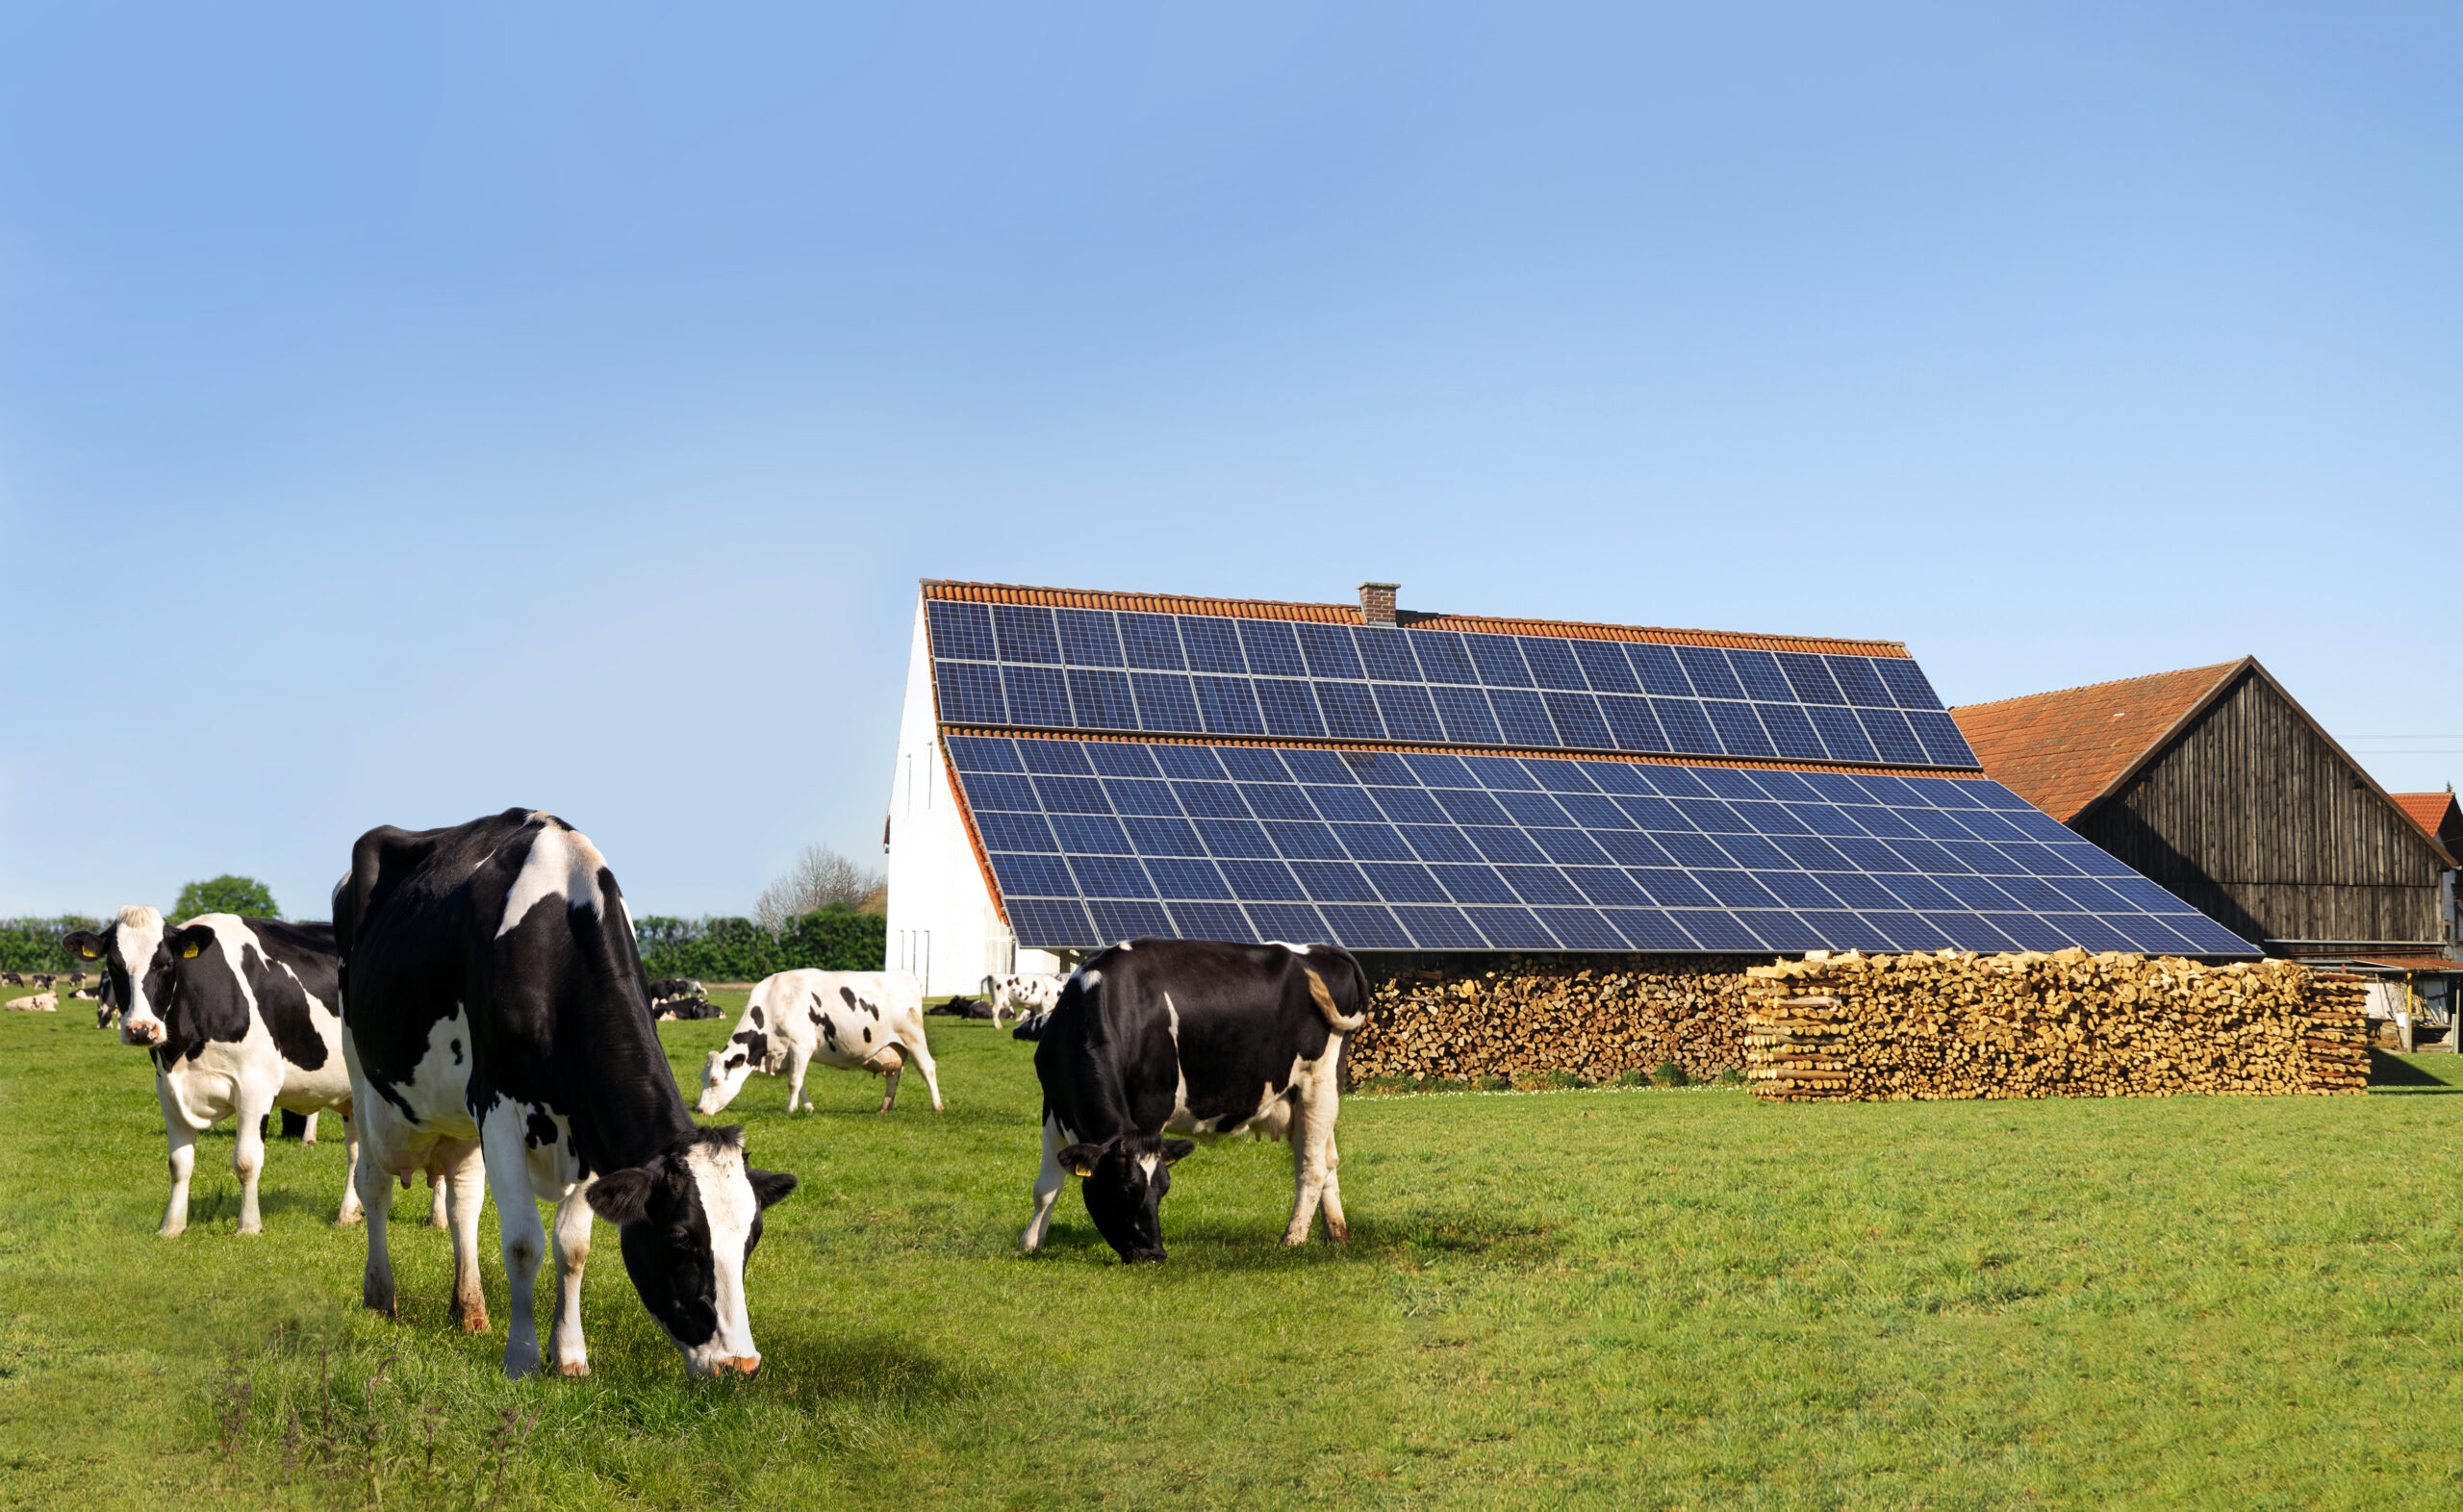 A Saint-Racho, un tracker solaire pour l'auto-consommation - Agri